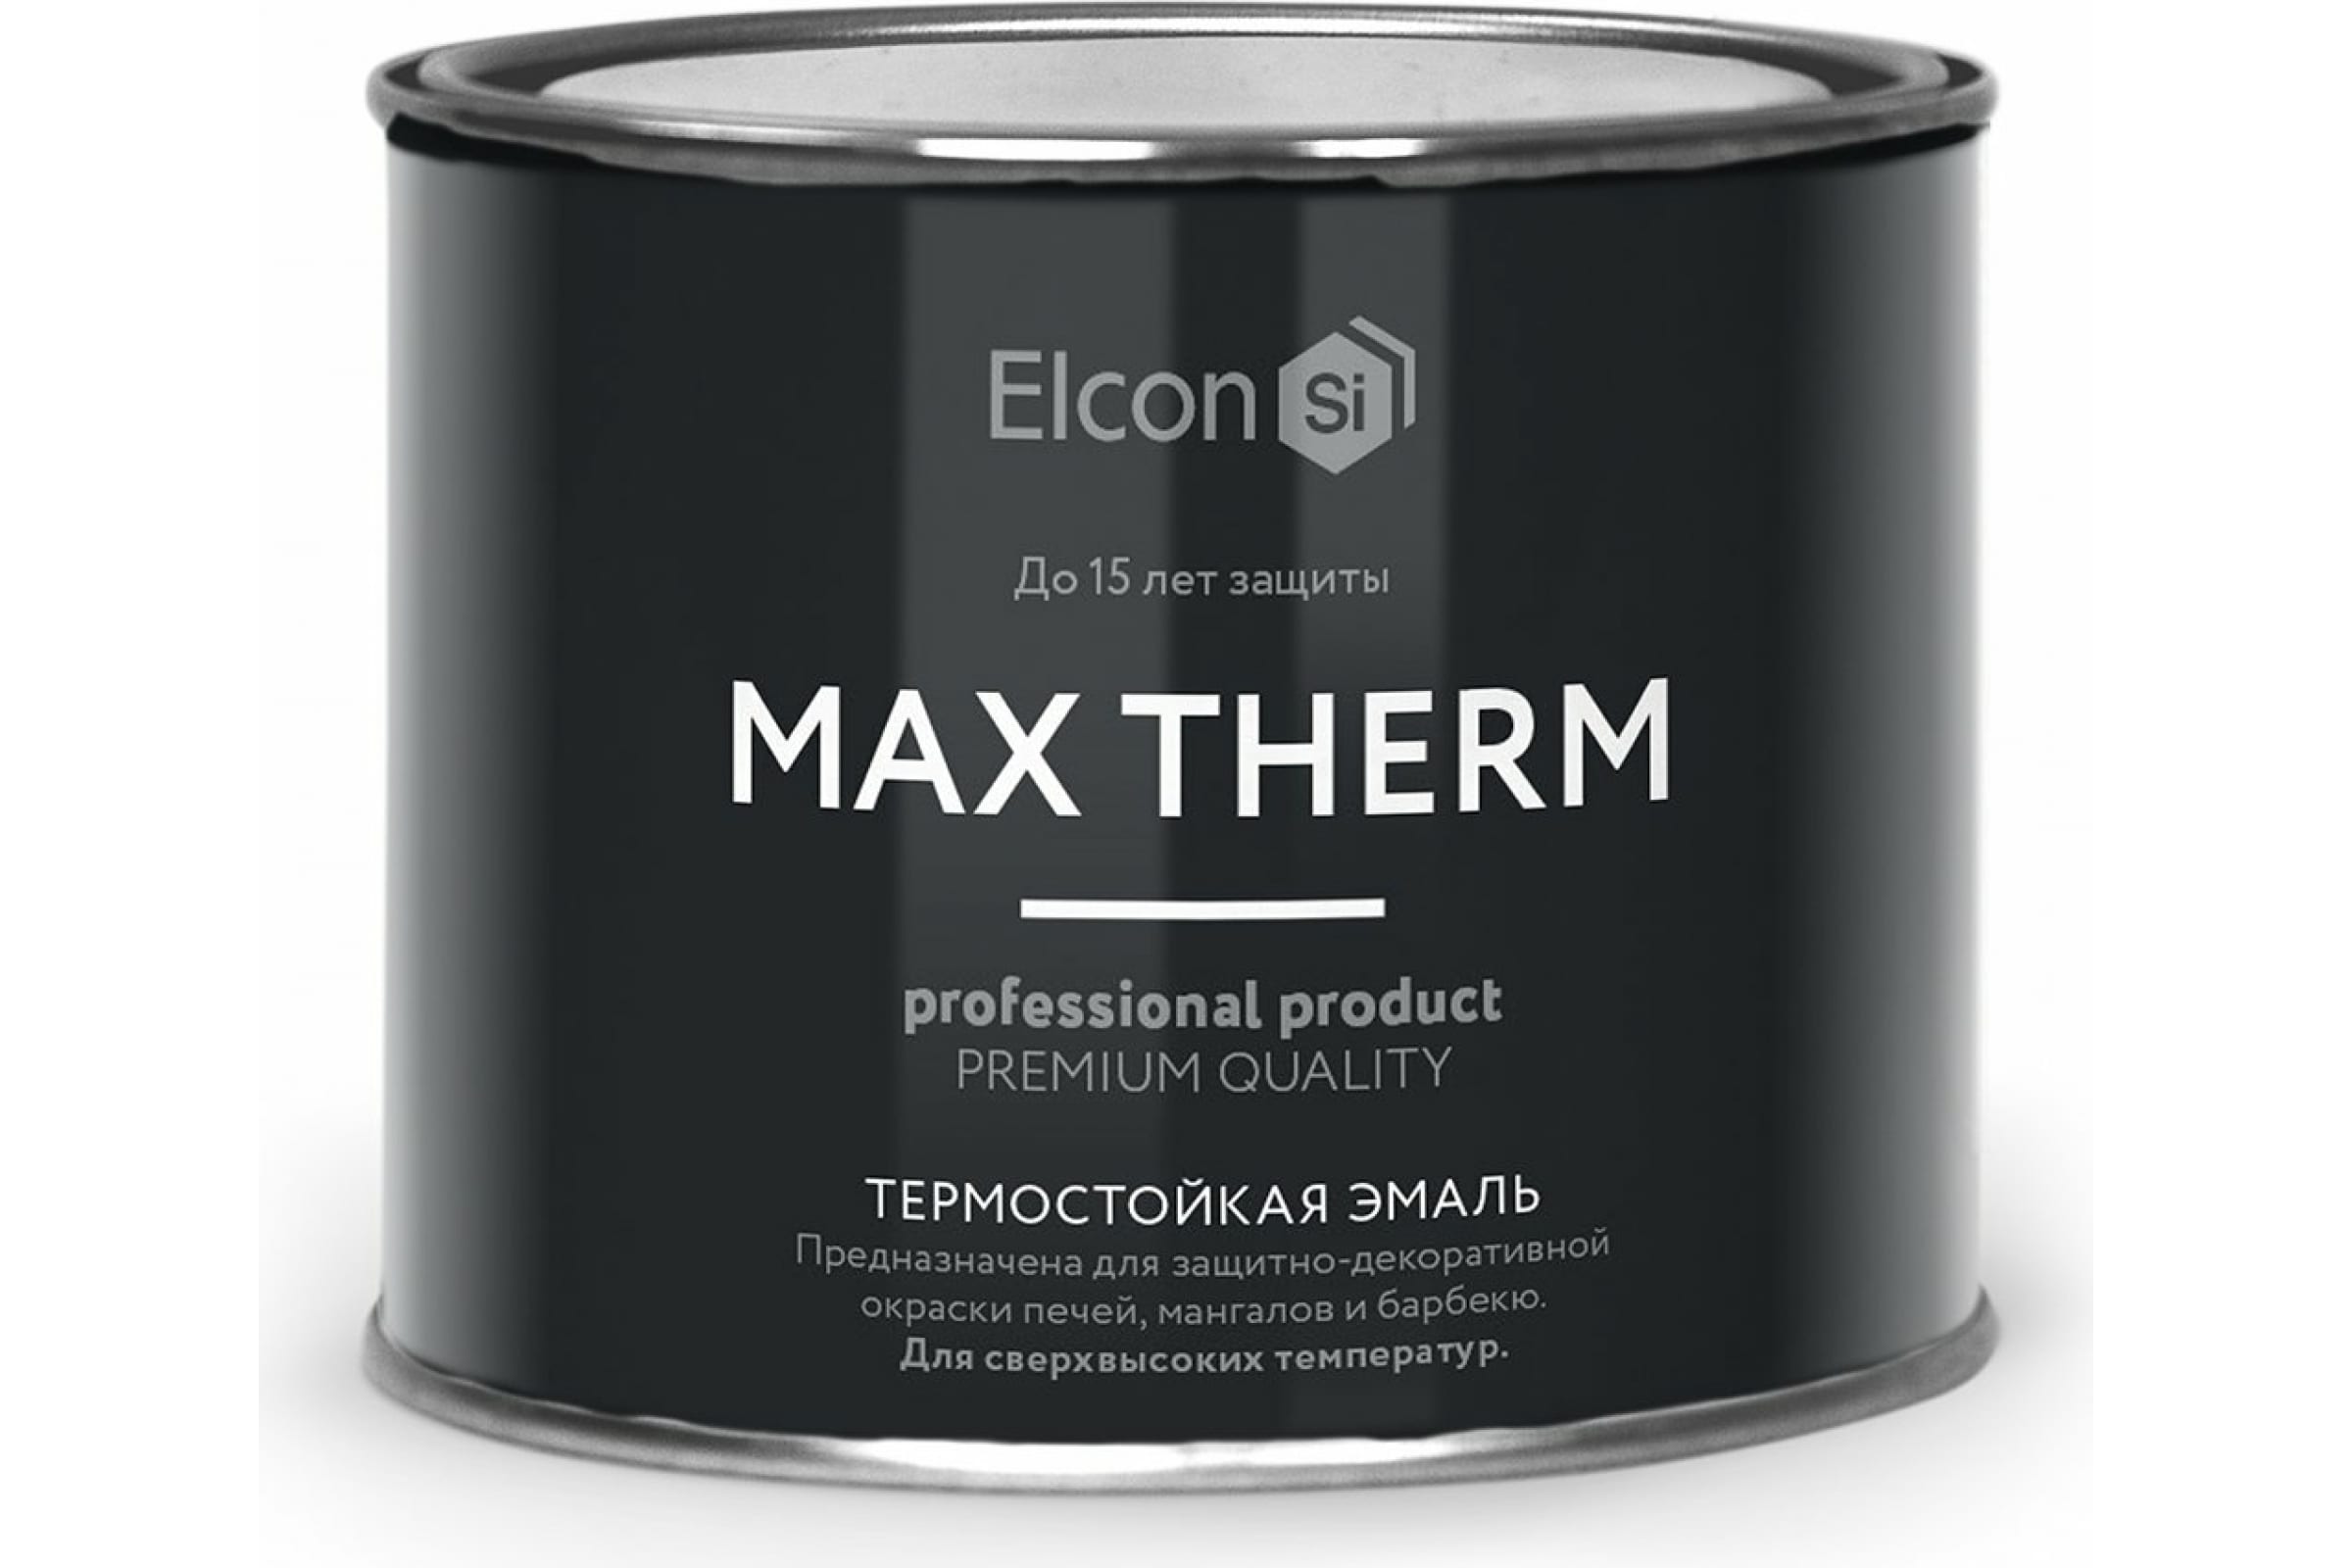 Термостойкая антикоррозионная эмаль Elcon Max Therm до 400 градусов, 0,4 л, желтая термостойкая антикоррозионная эмаль elcon max therm до 400 градусов 0 4 л коричневая